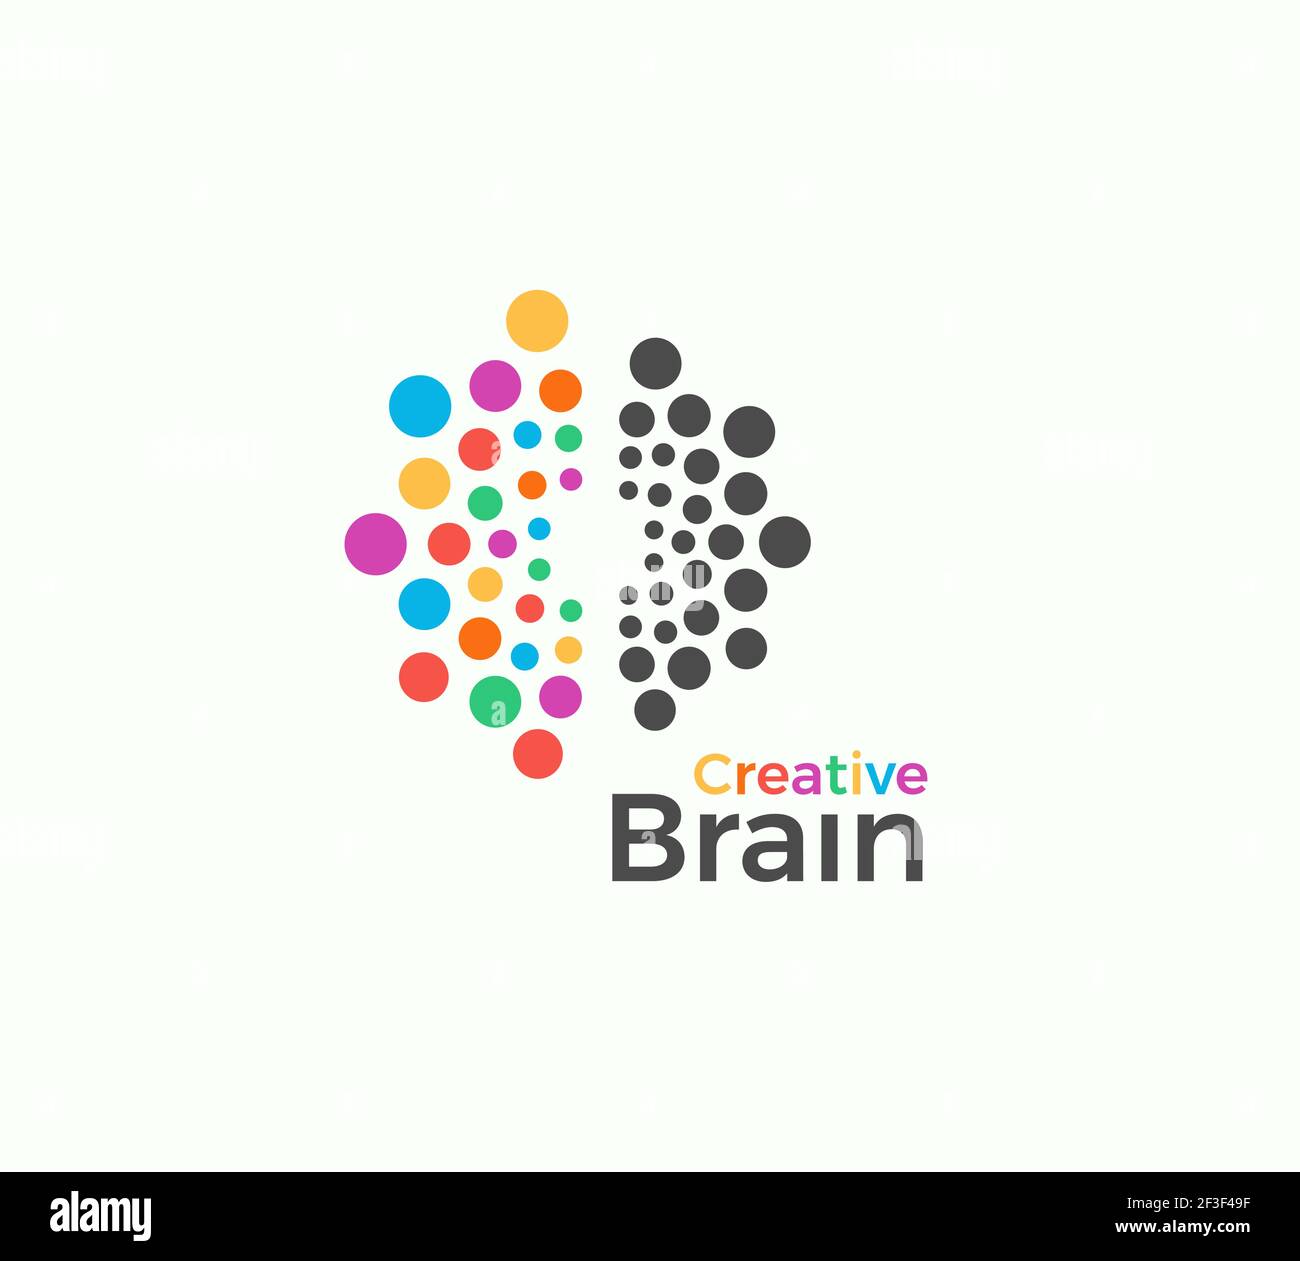 Creative Brain Vektor-Logo-Vorlage in farbigen Punkten Stil. Kreative Phantasie, Inspiration abstrakte Symbol auf weißem Hintergrund. Linkes und rechtes Gehirn Stock Vektor